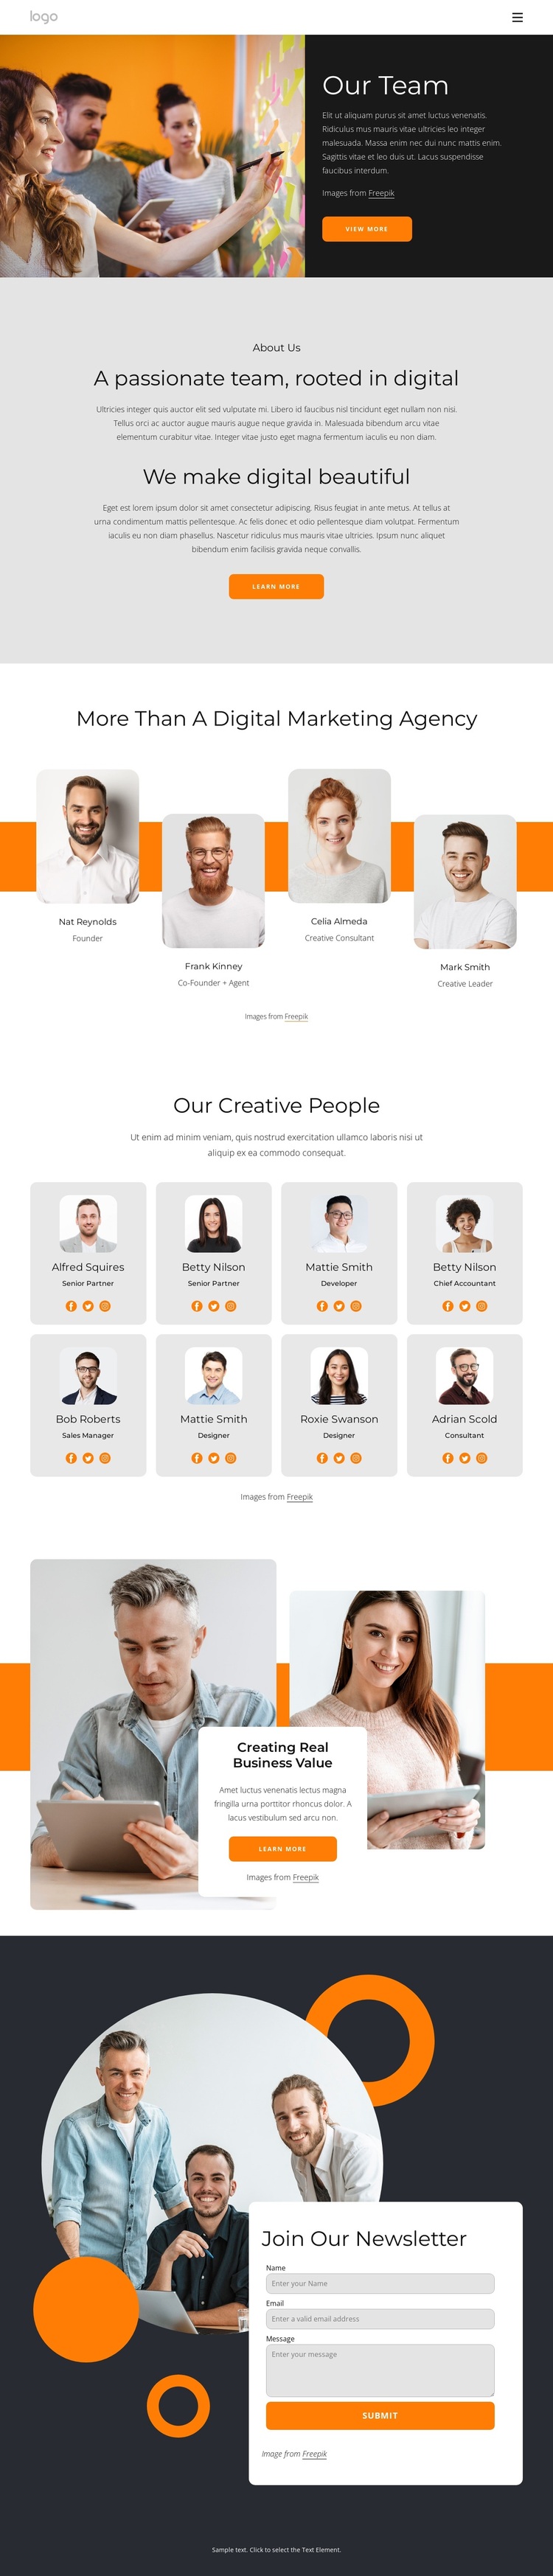 We are creative people with big dreams Joomla Page Builder